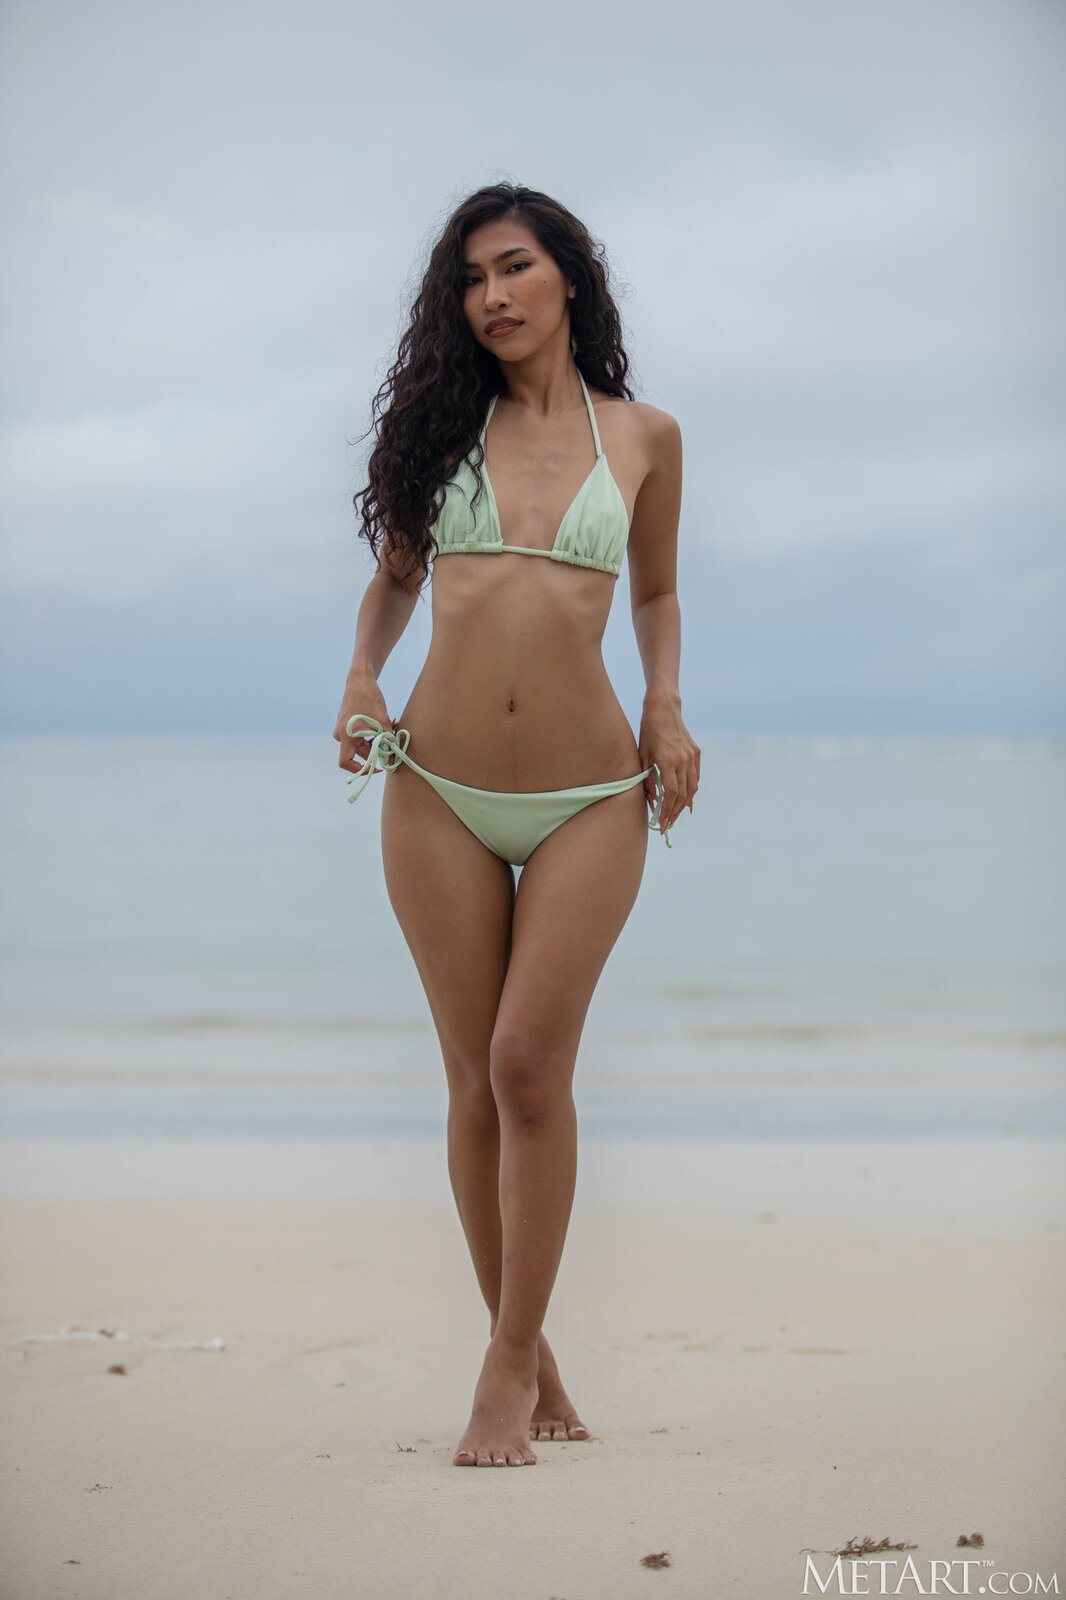 Beautiful nude Thai model Niki peeling off bikini on the beach